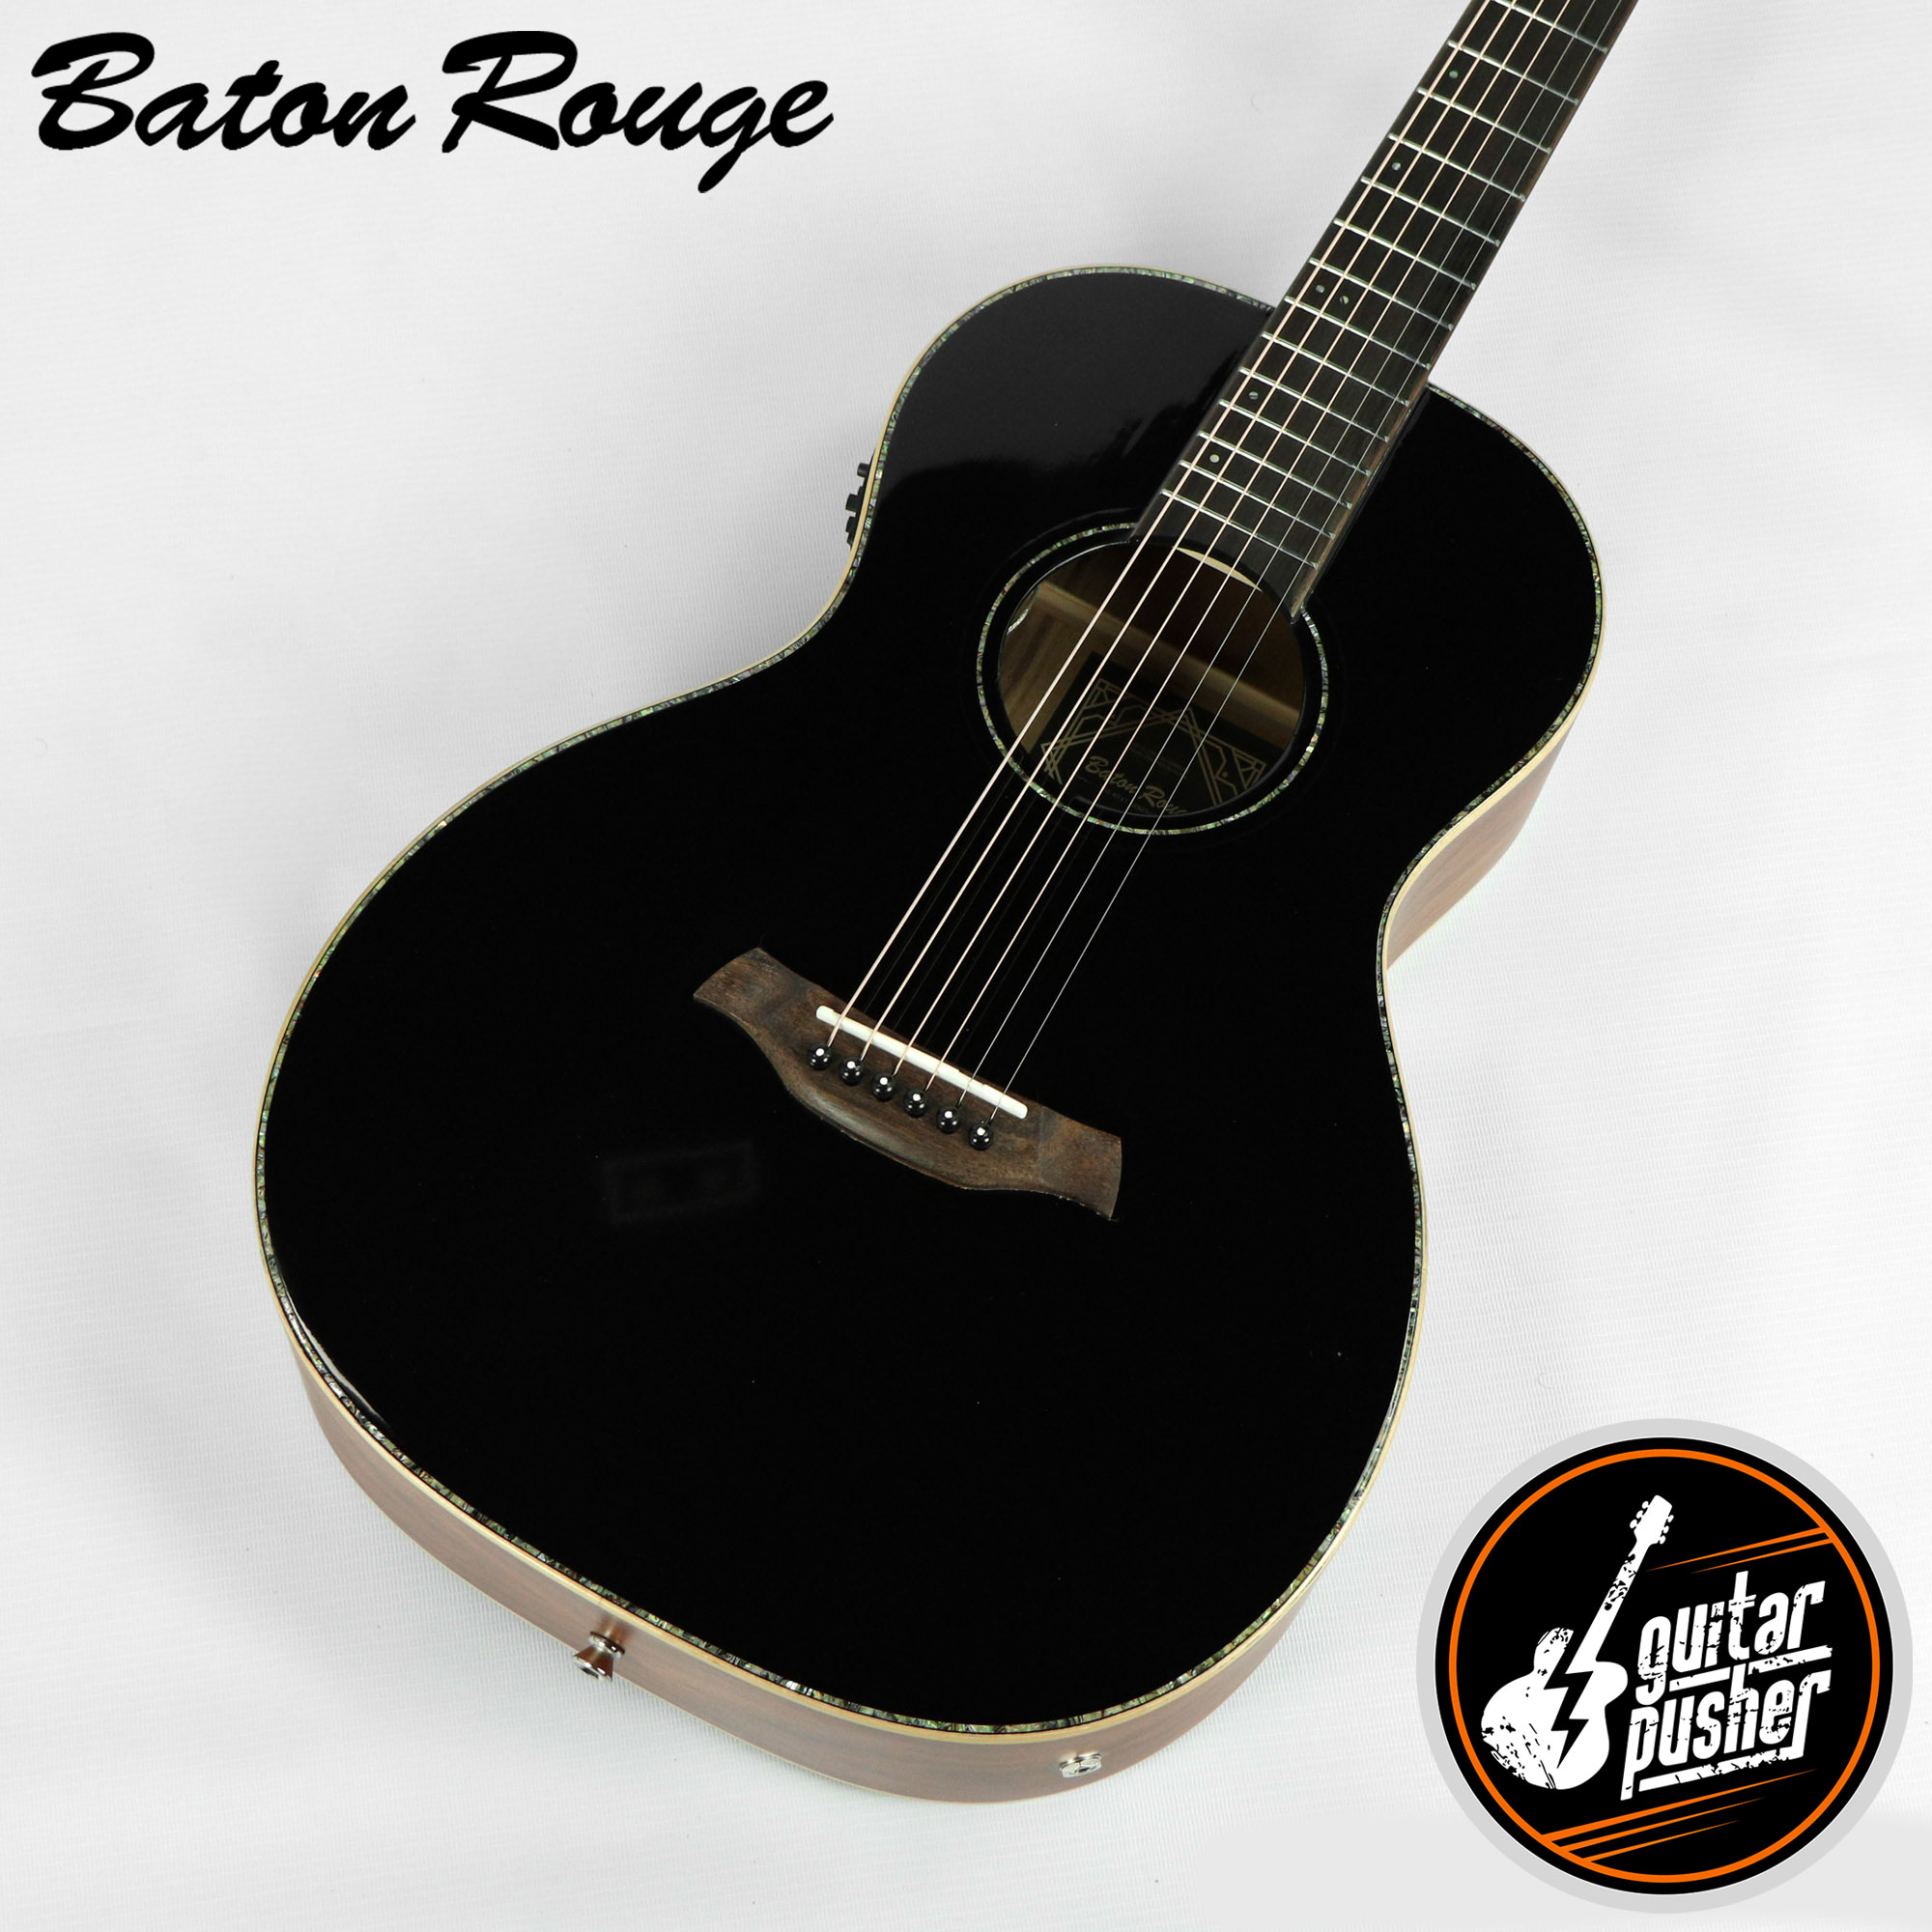 Bébé Hache Miniature Guitare ~BA07 ~Standard Acoustique~ Naturel/Rouge /  Black /